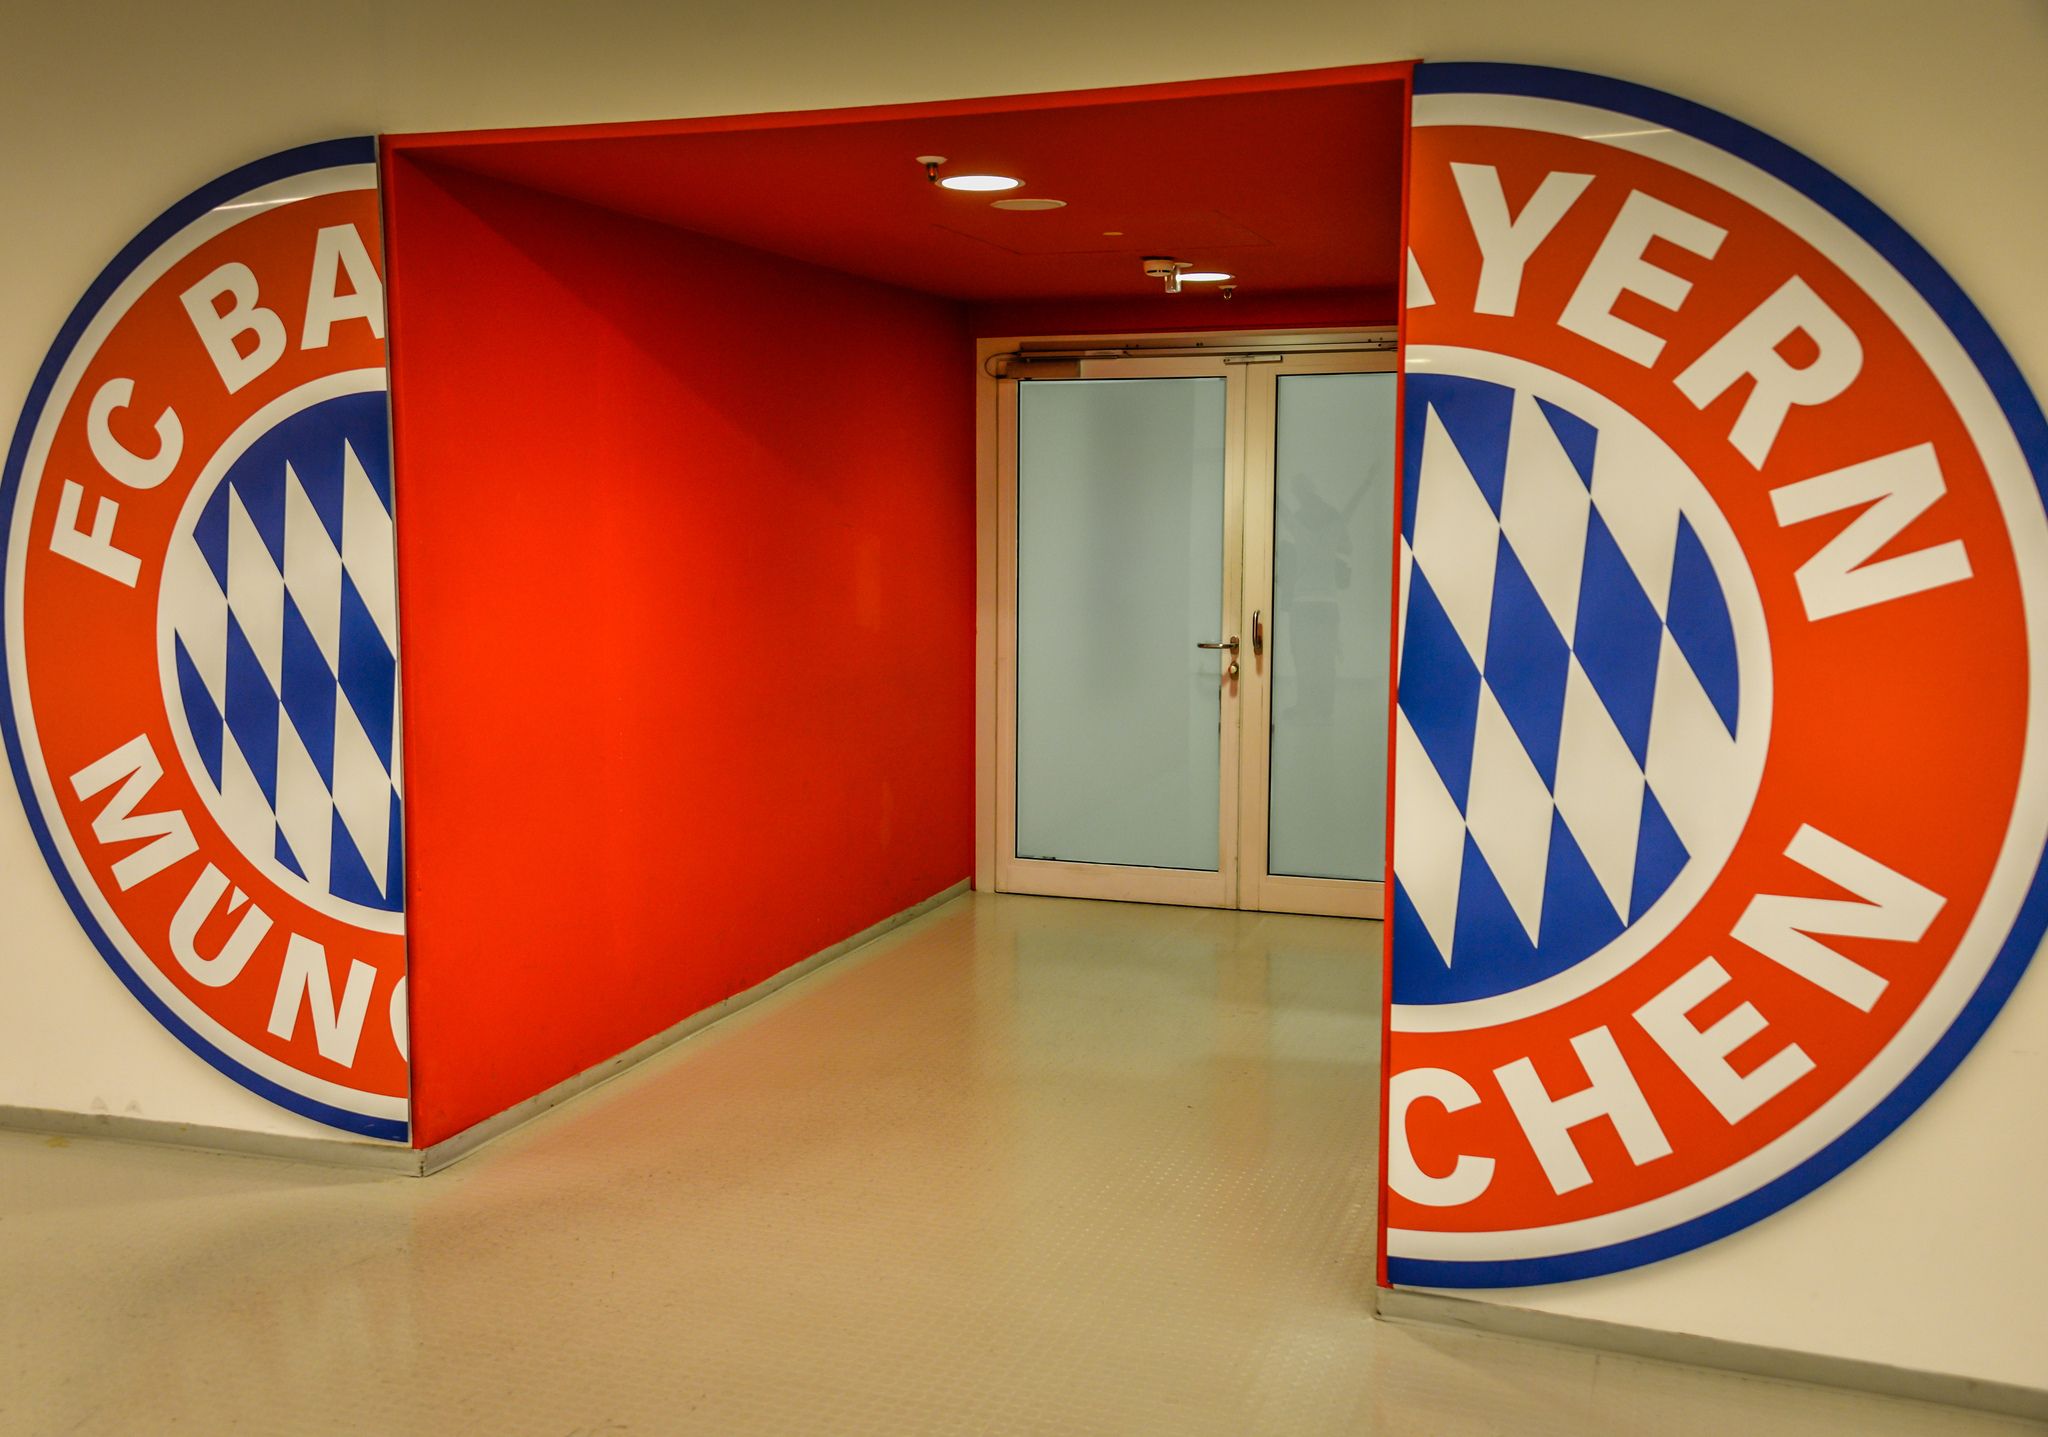 El Bayern München abre sus puertas a un nuevo proyecto